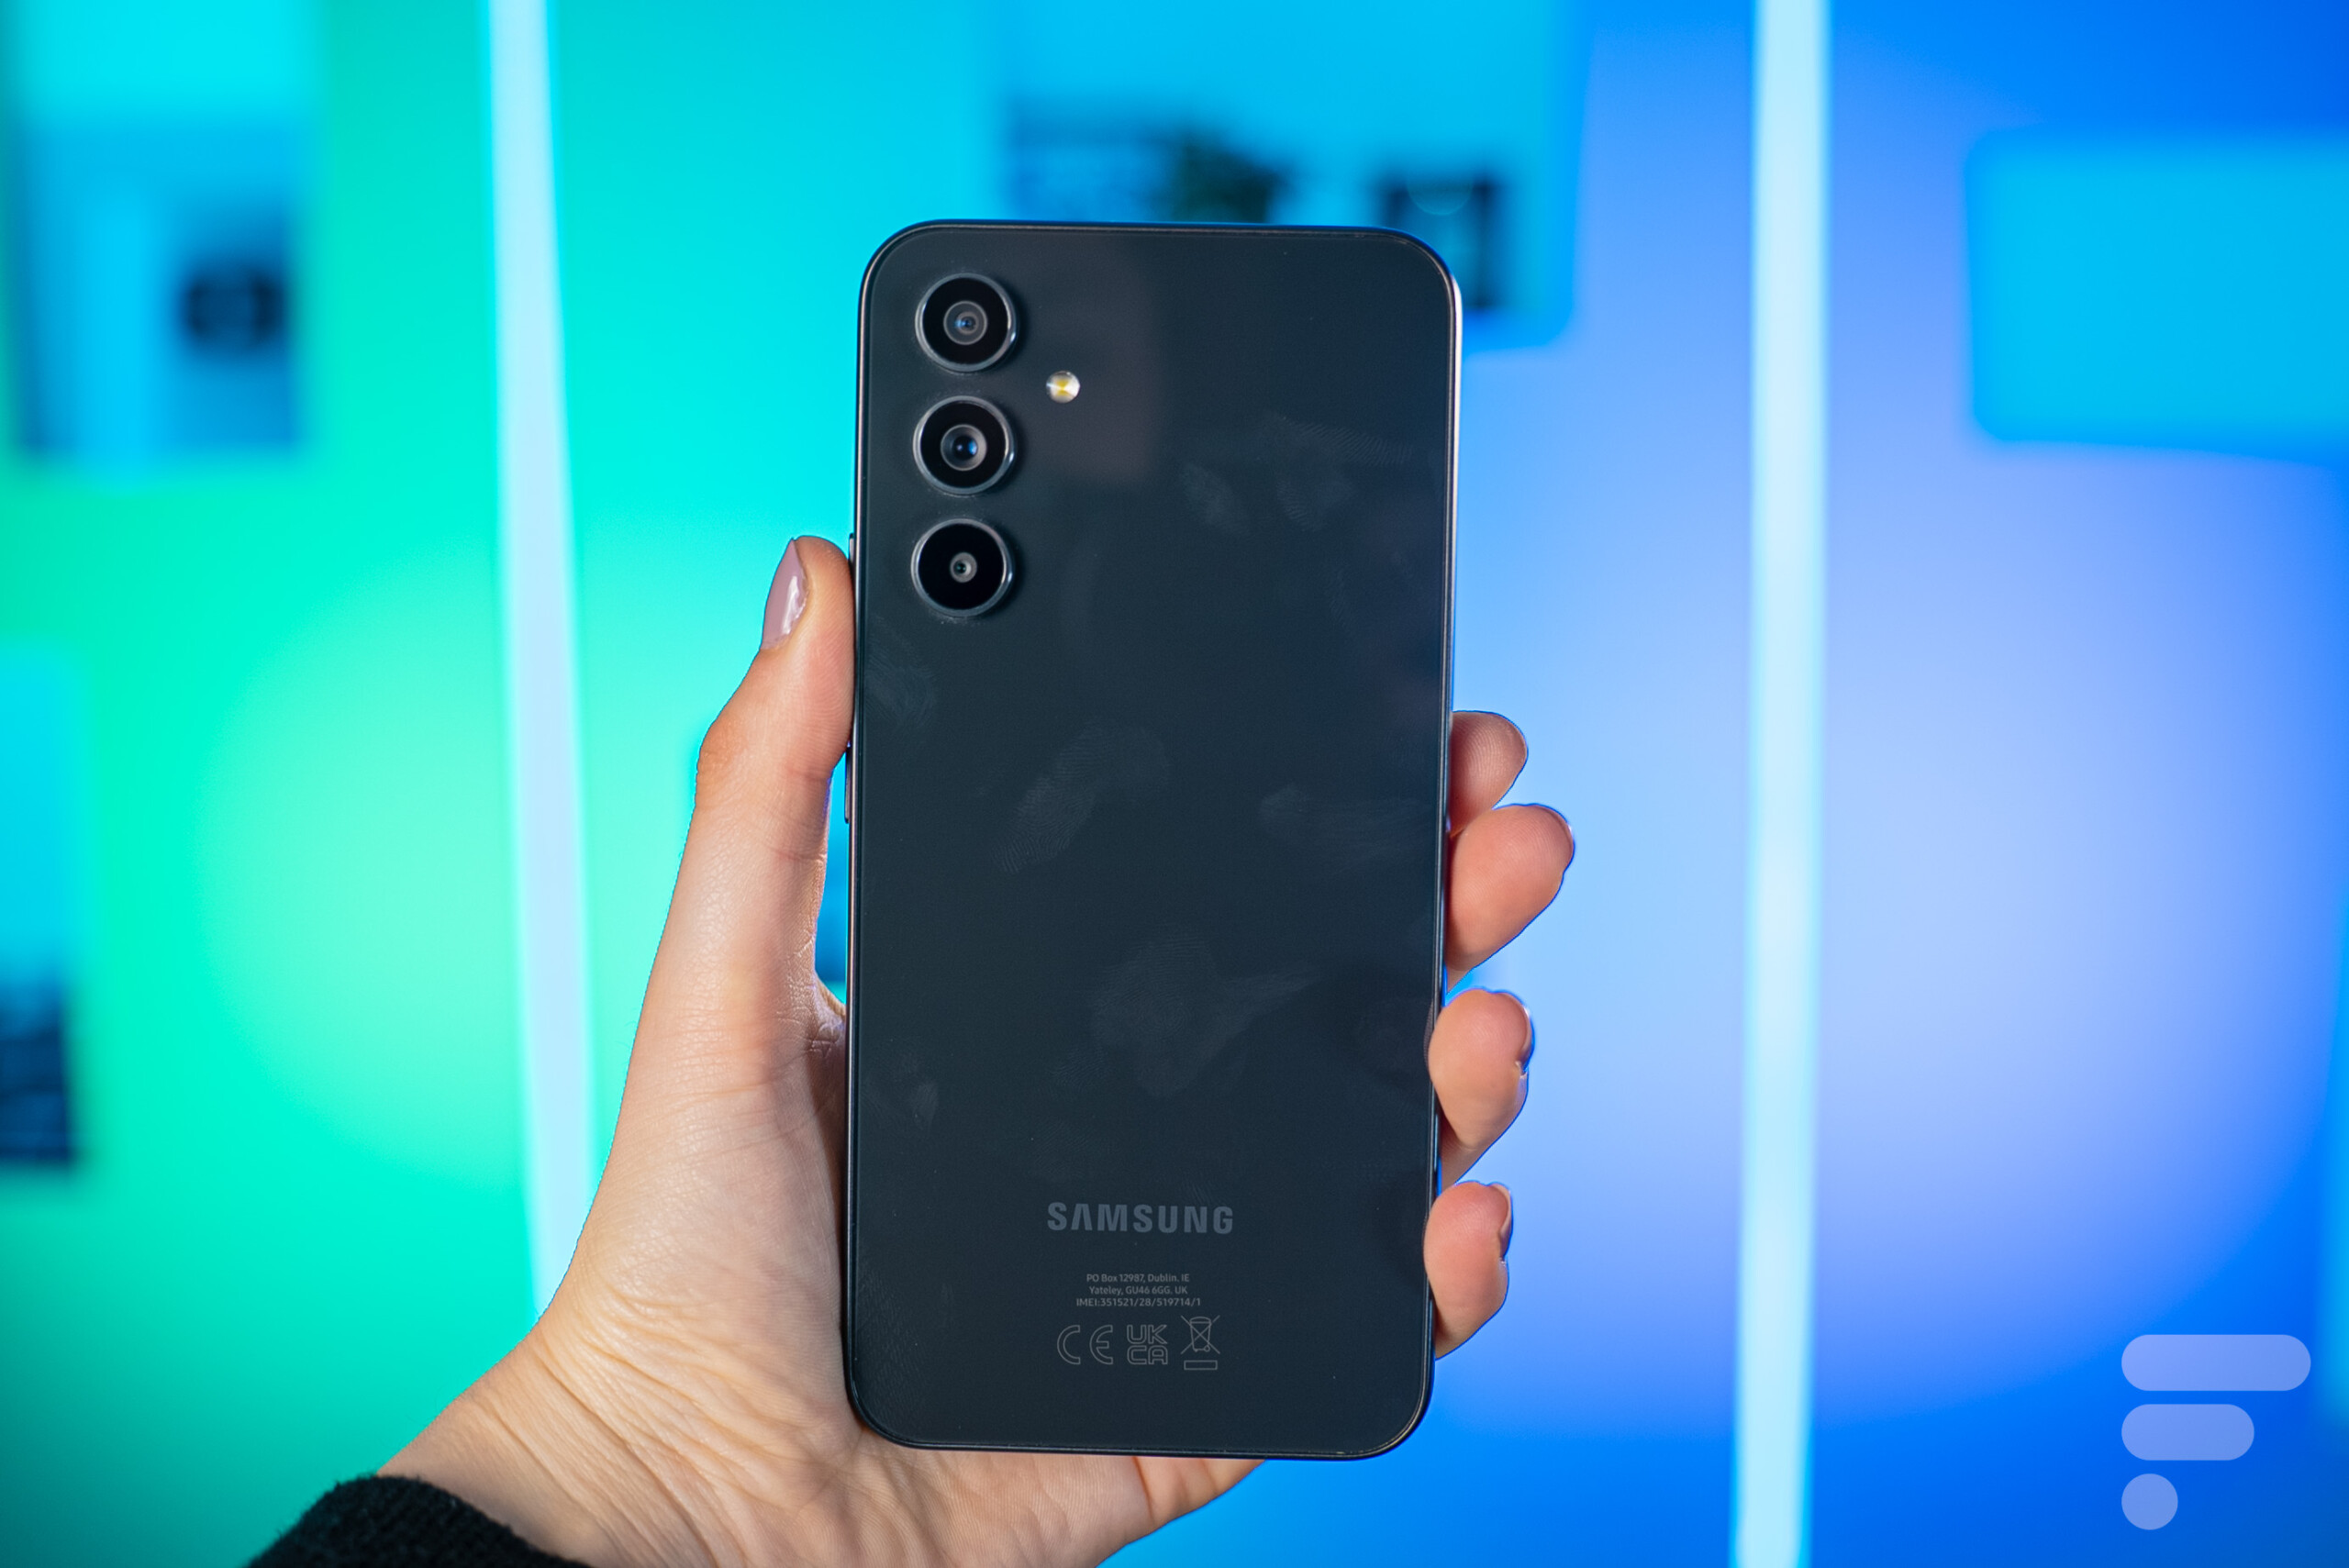 Quel smartphone Samsung acheter en 2021 ?